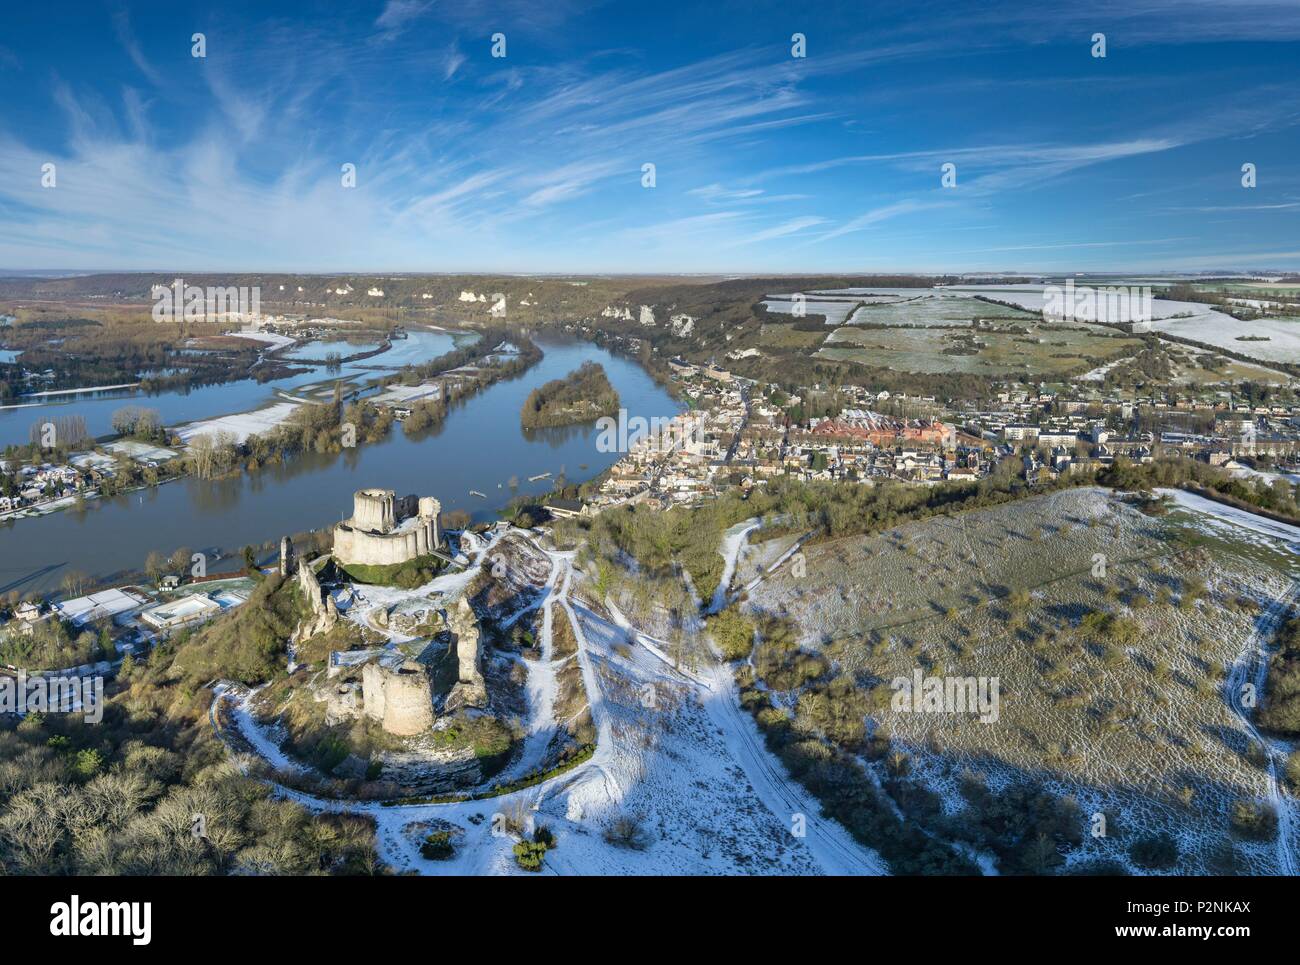 La France, l'Eure, Les Andelys, Château-Gaillard, forteresse du 12ème siècle construit par Richard Coeur de Lion, vallée de la Seine, la Seine en crue (vue aérienne) Banque D'Images